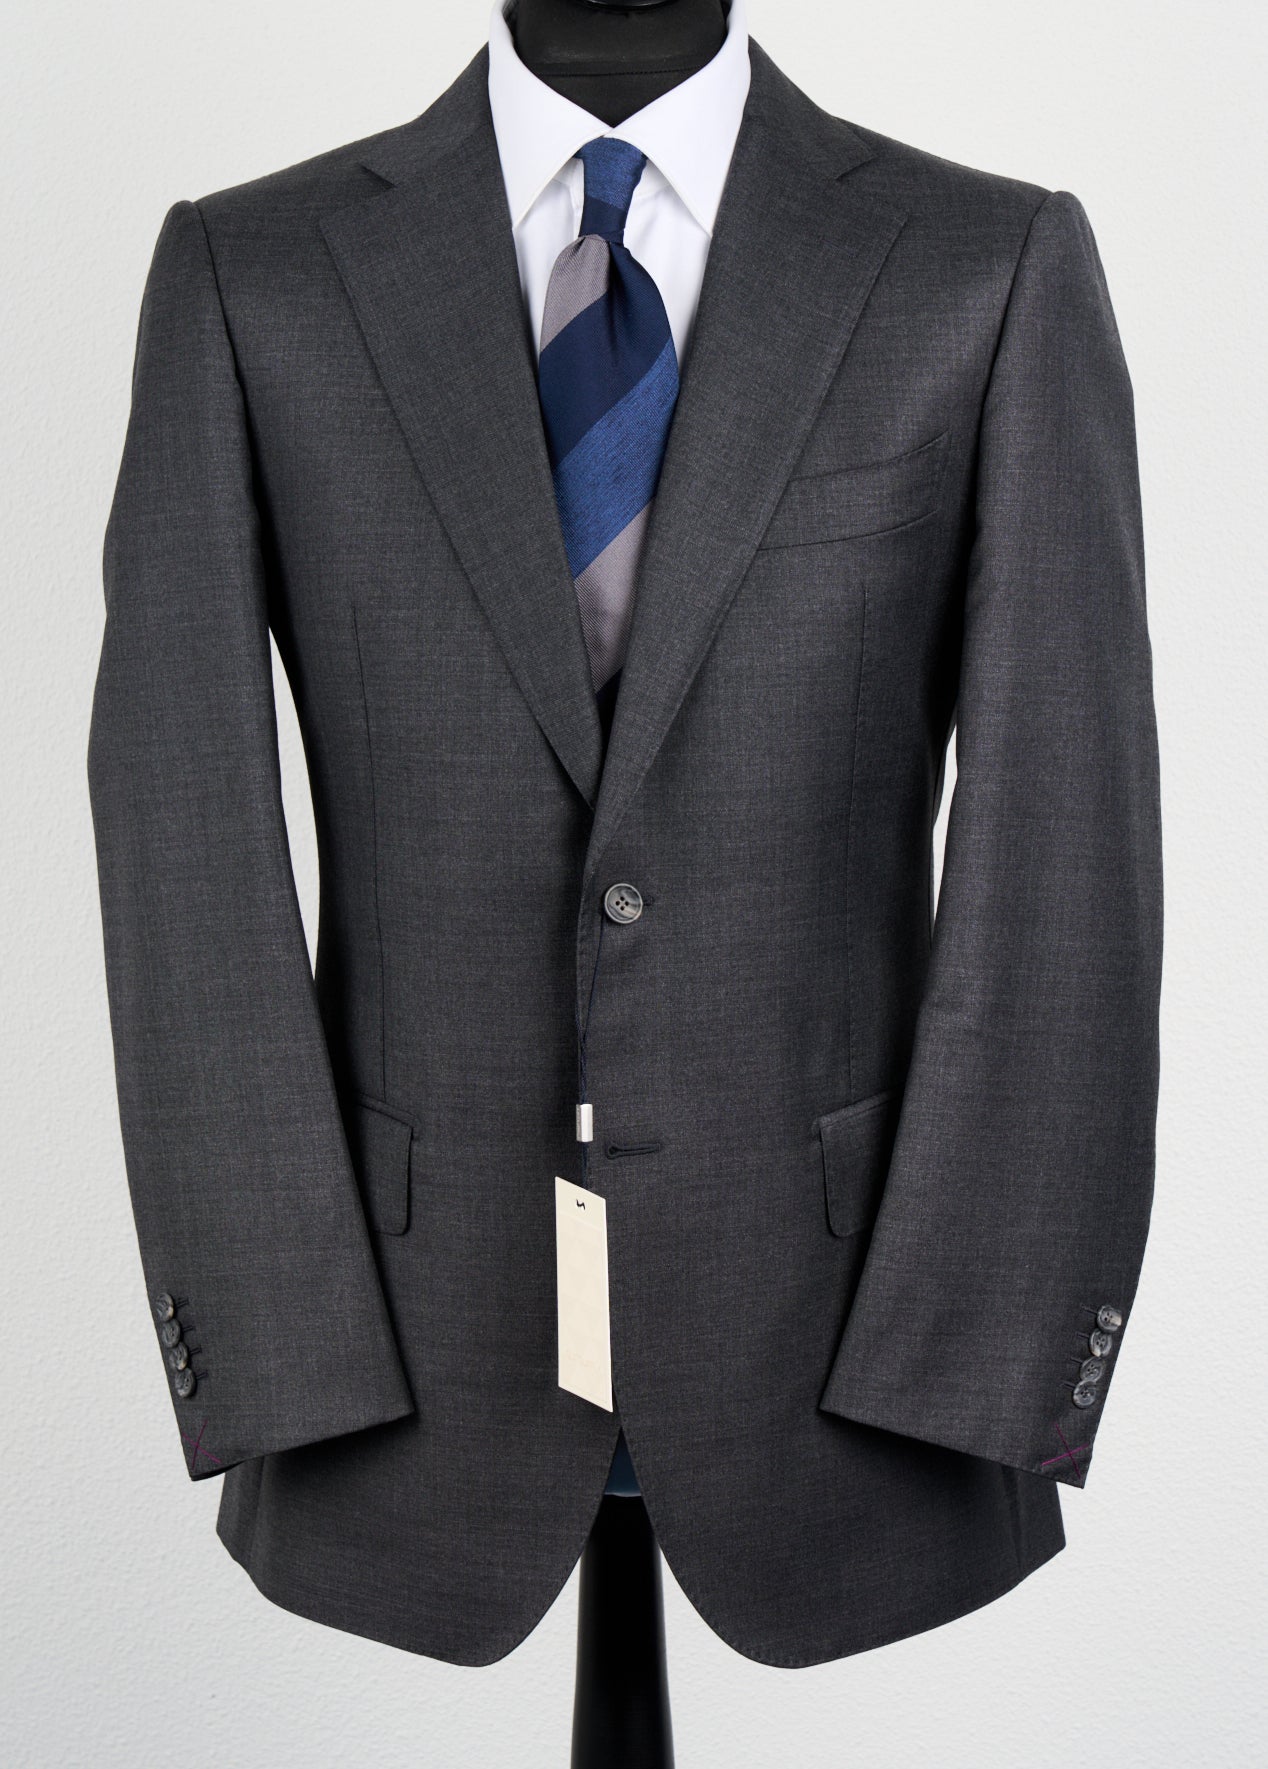 New Suitsupply Lazio Dark Gray Pure Wool All Season Suit - Size 38S, 42R, 42L, 44R, 46L